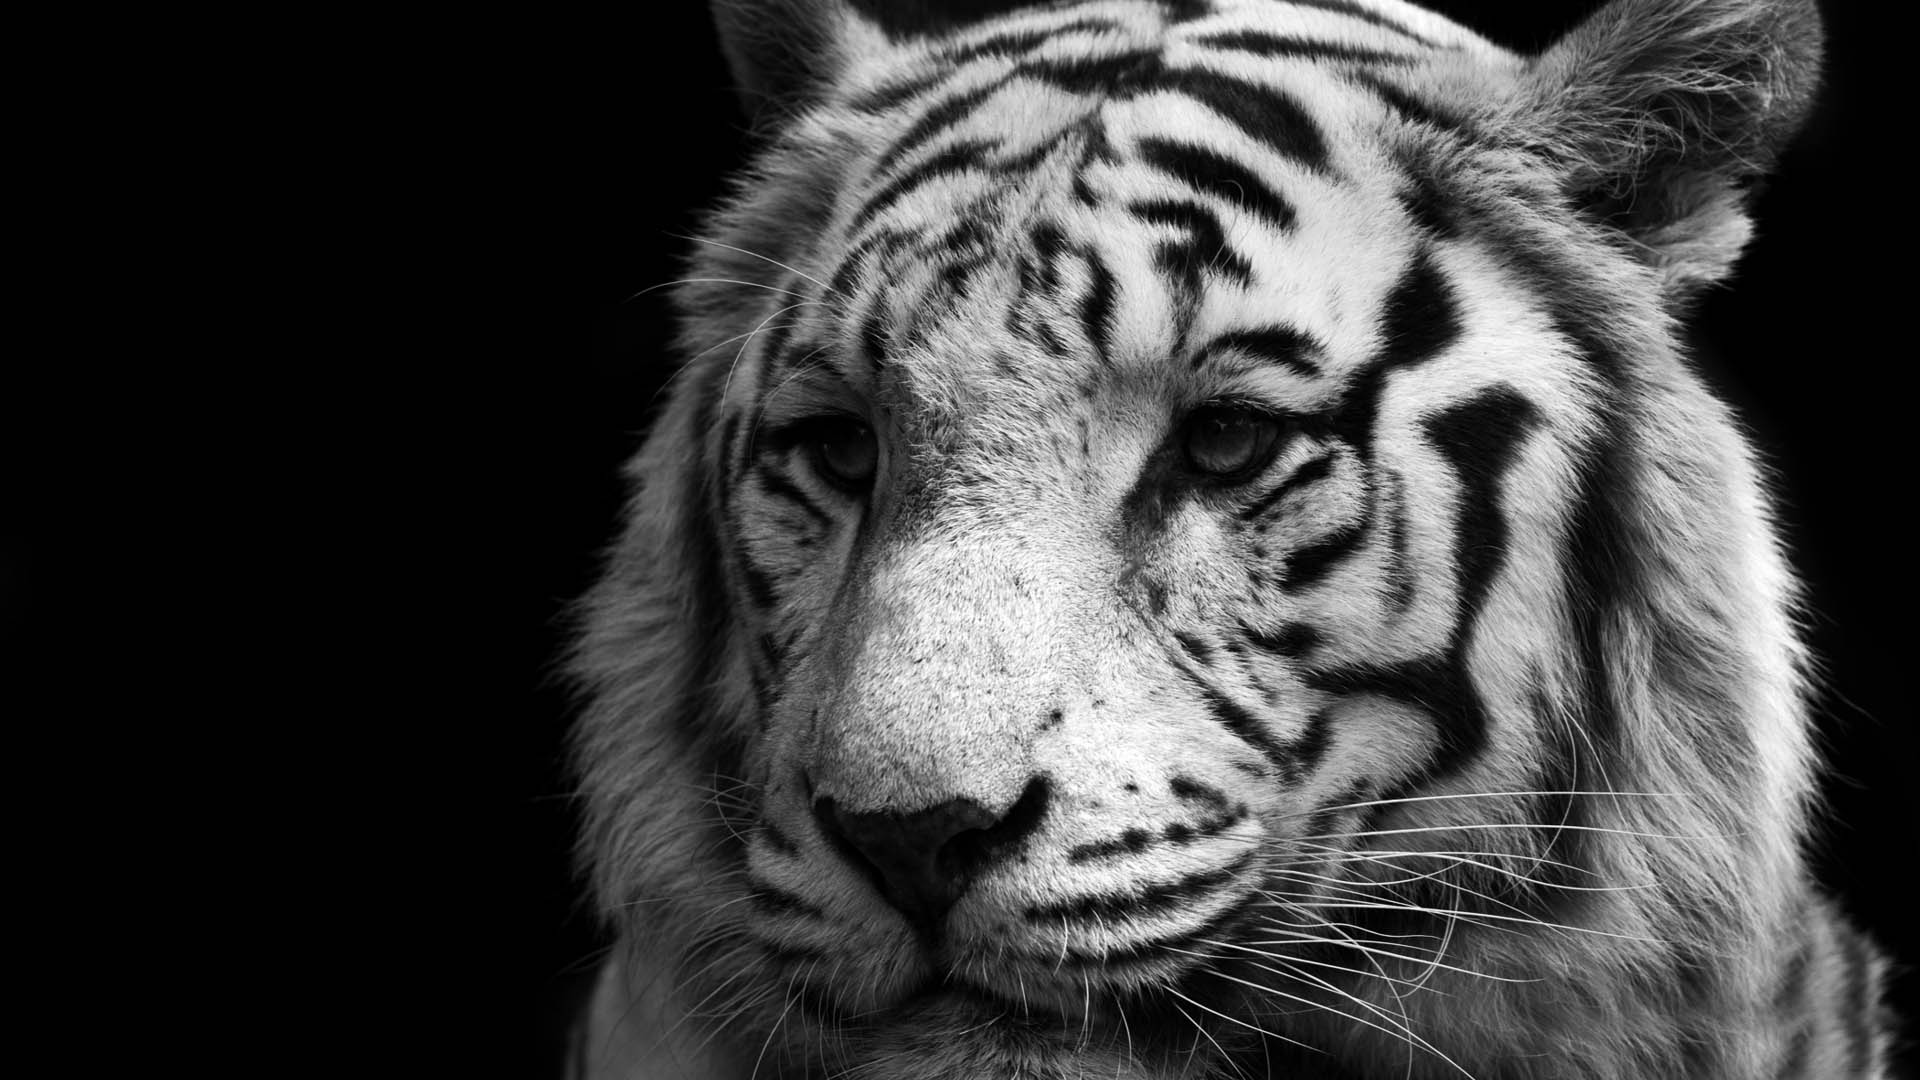 Black Tiger Pictures  Download Free Images on Unsplash